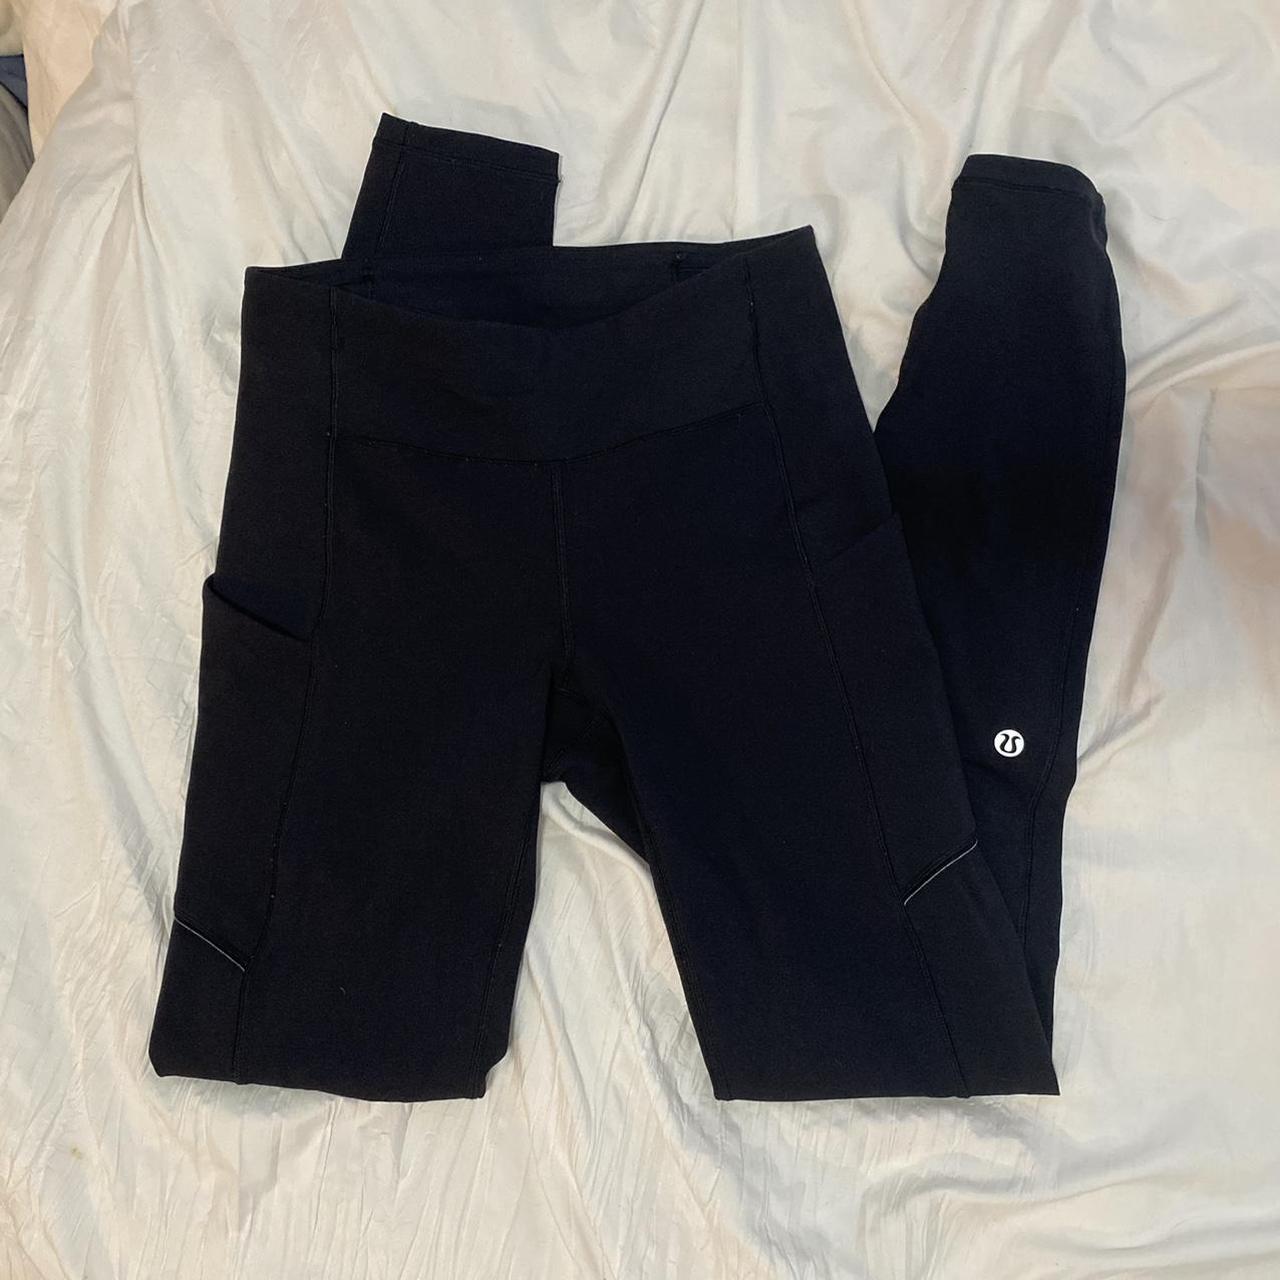 lululemon leggings - has side pockets - zipper - Depop